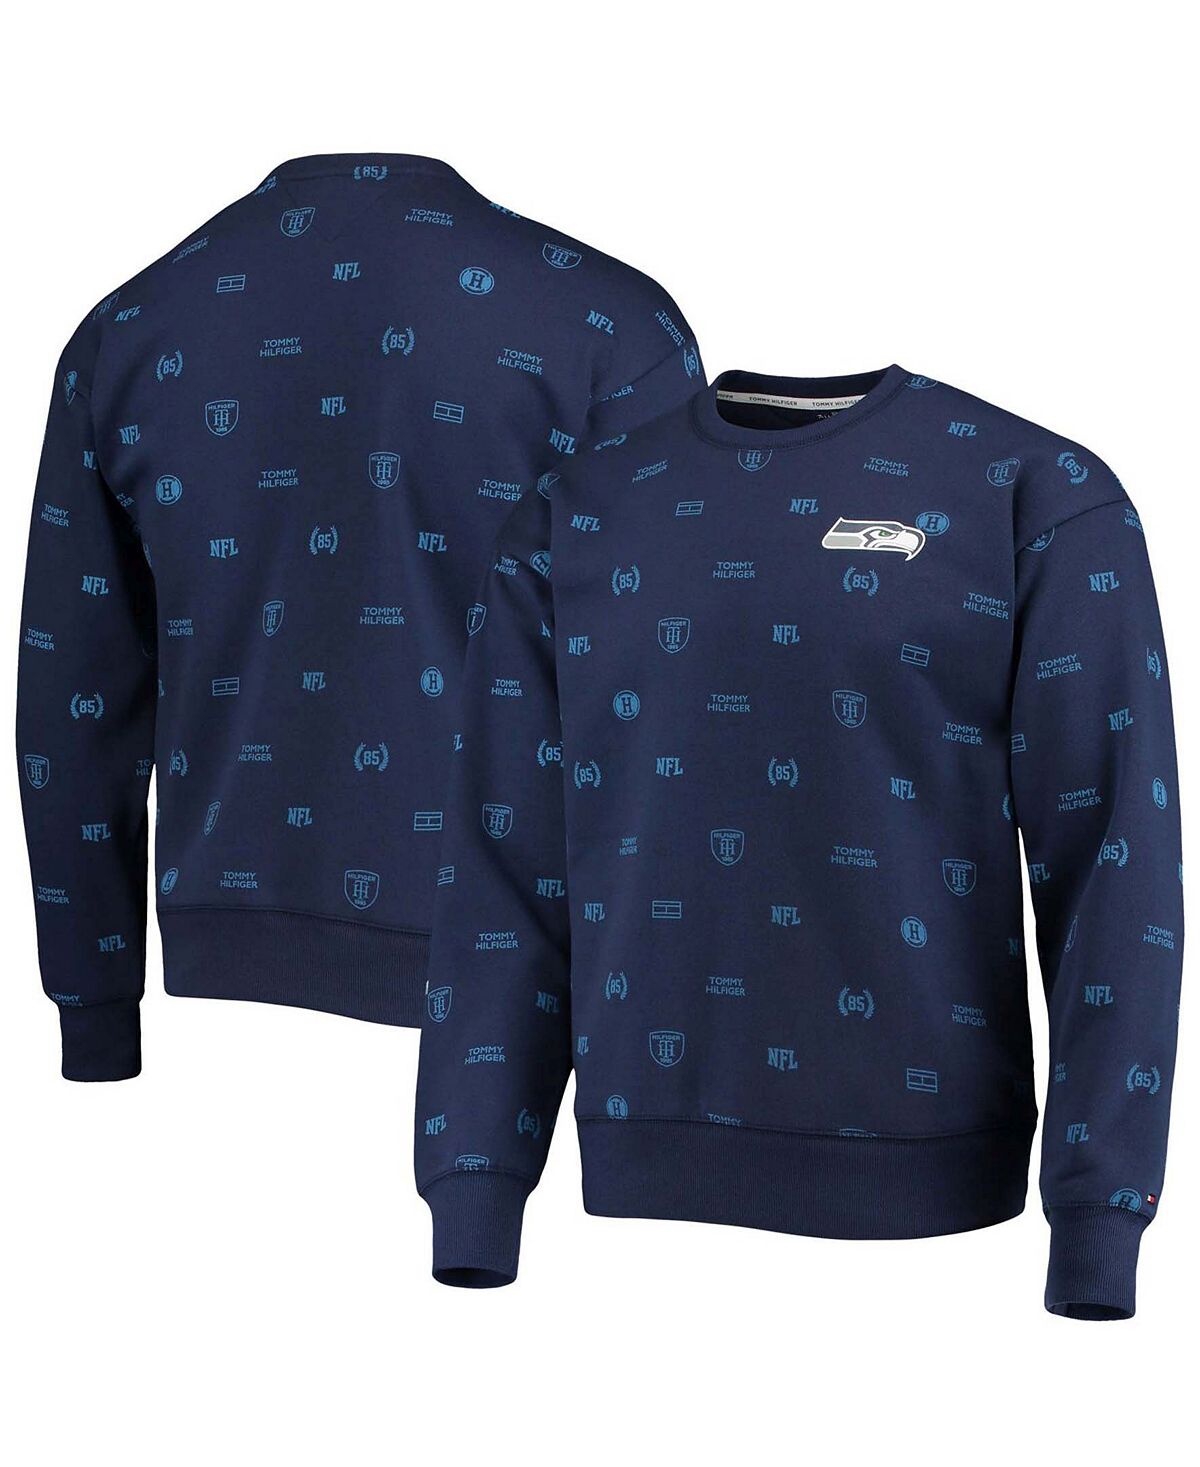 Мужская толстовка с графическим пуловером college navy seattle seahawks reid Tommy Hilfiger, синий reid